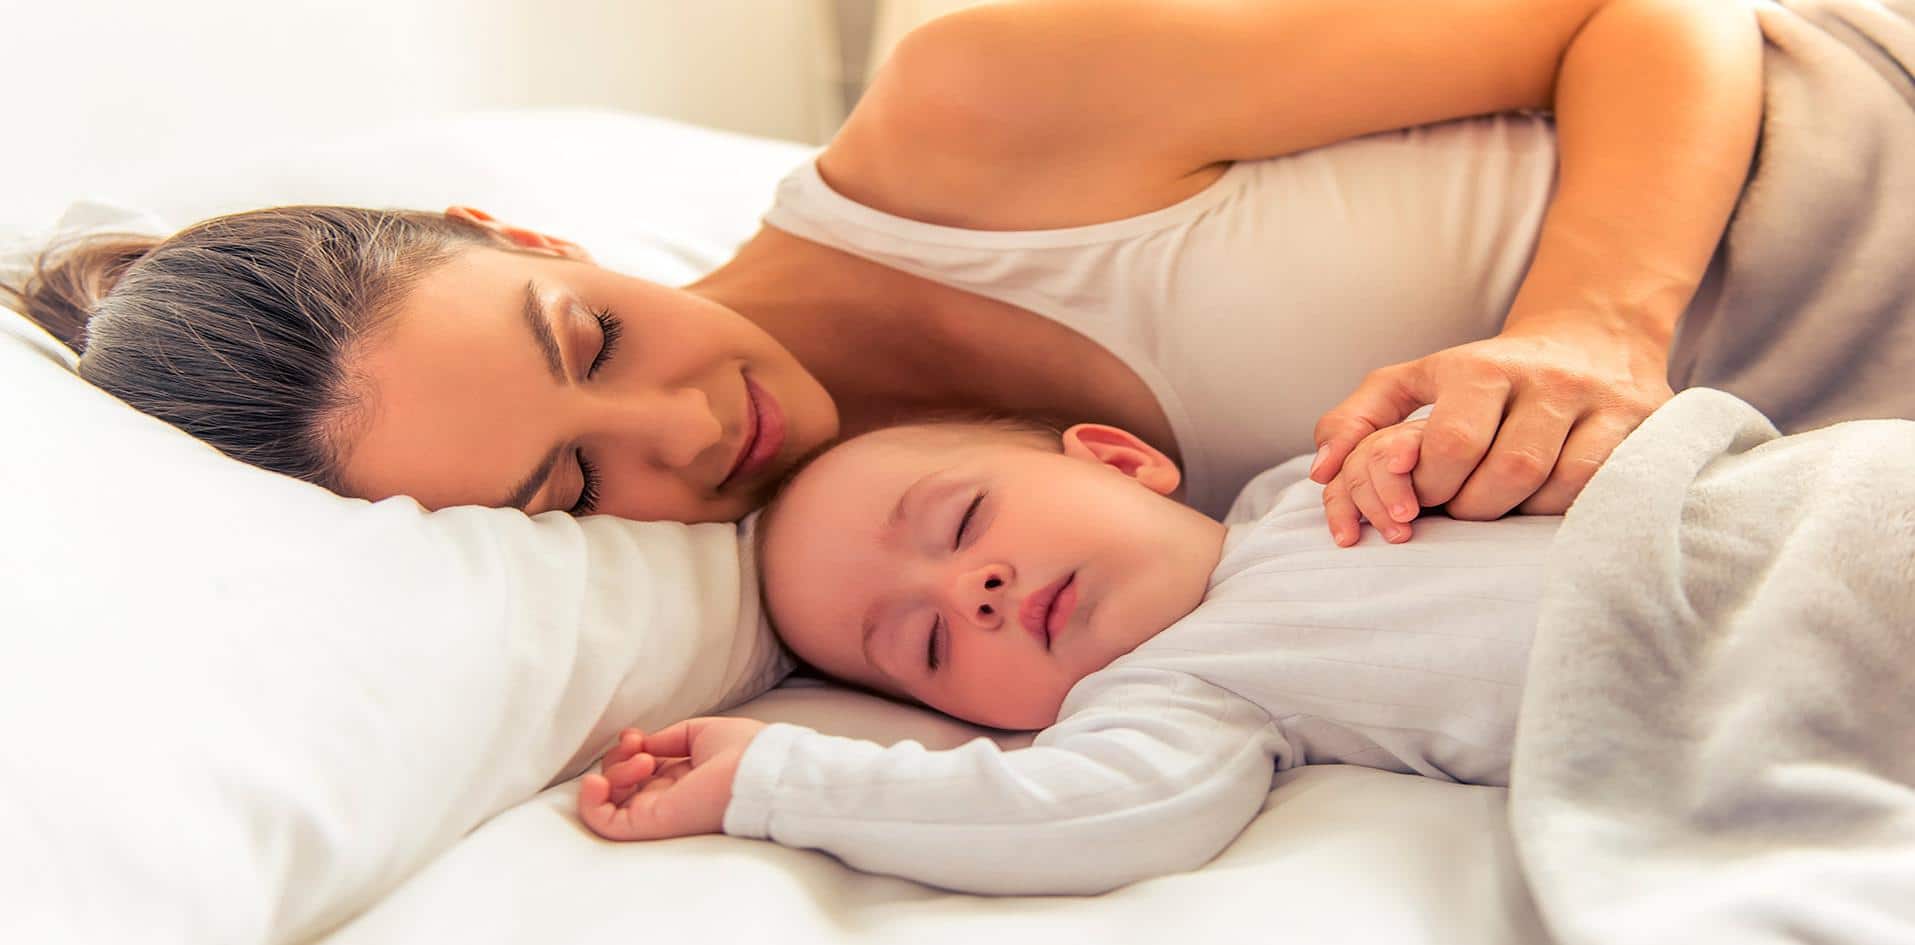 Mãe dormindo com bebê em cama compartilhada